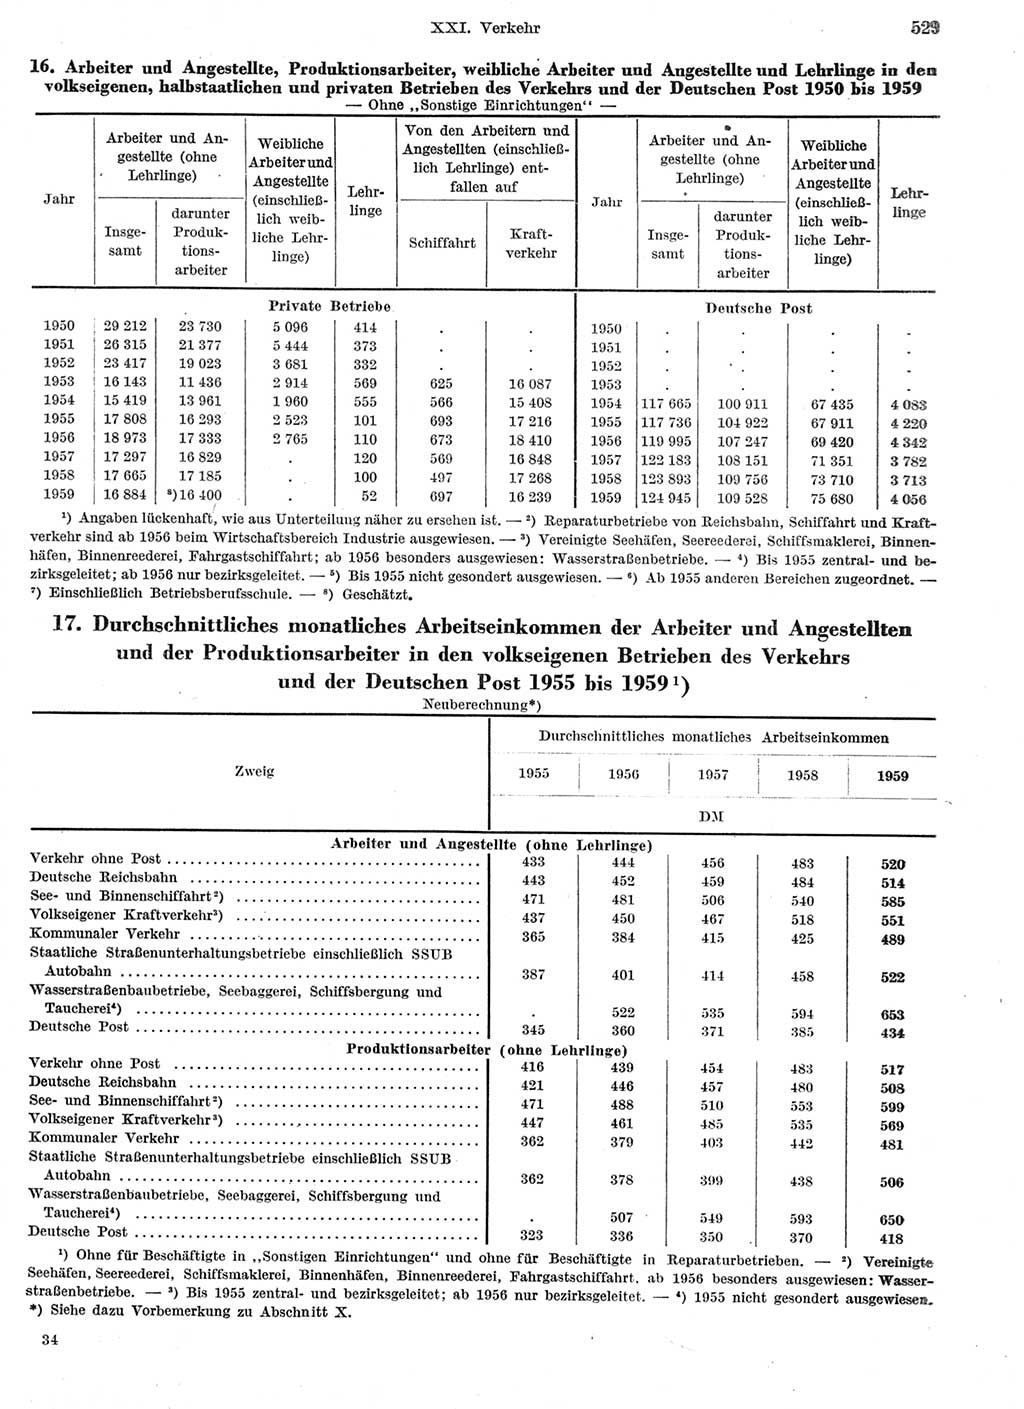 Statistisches Jahrbuch der Deutschen Demokratischen Republik (DDR) 1959, Seite 529 (Stat. Jb. DDR 1959, S. 529)